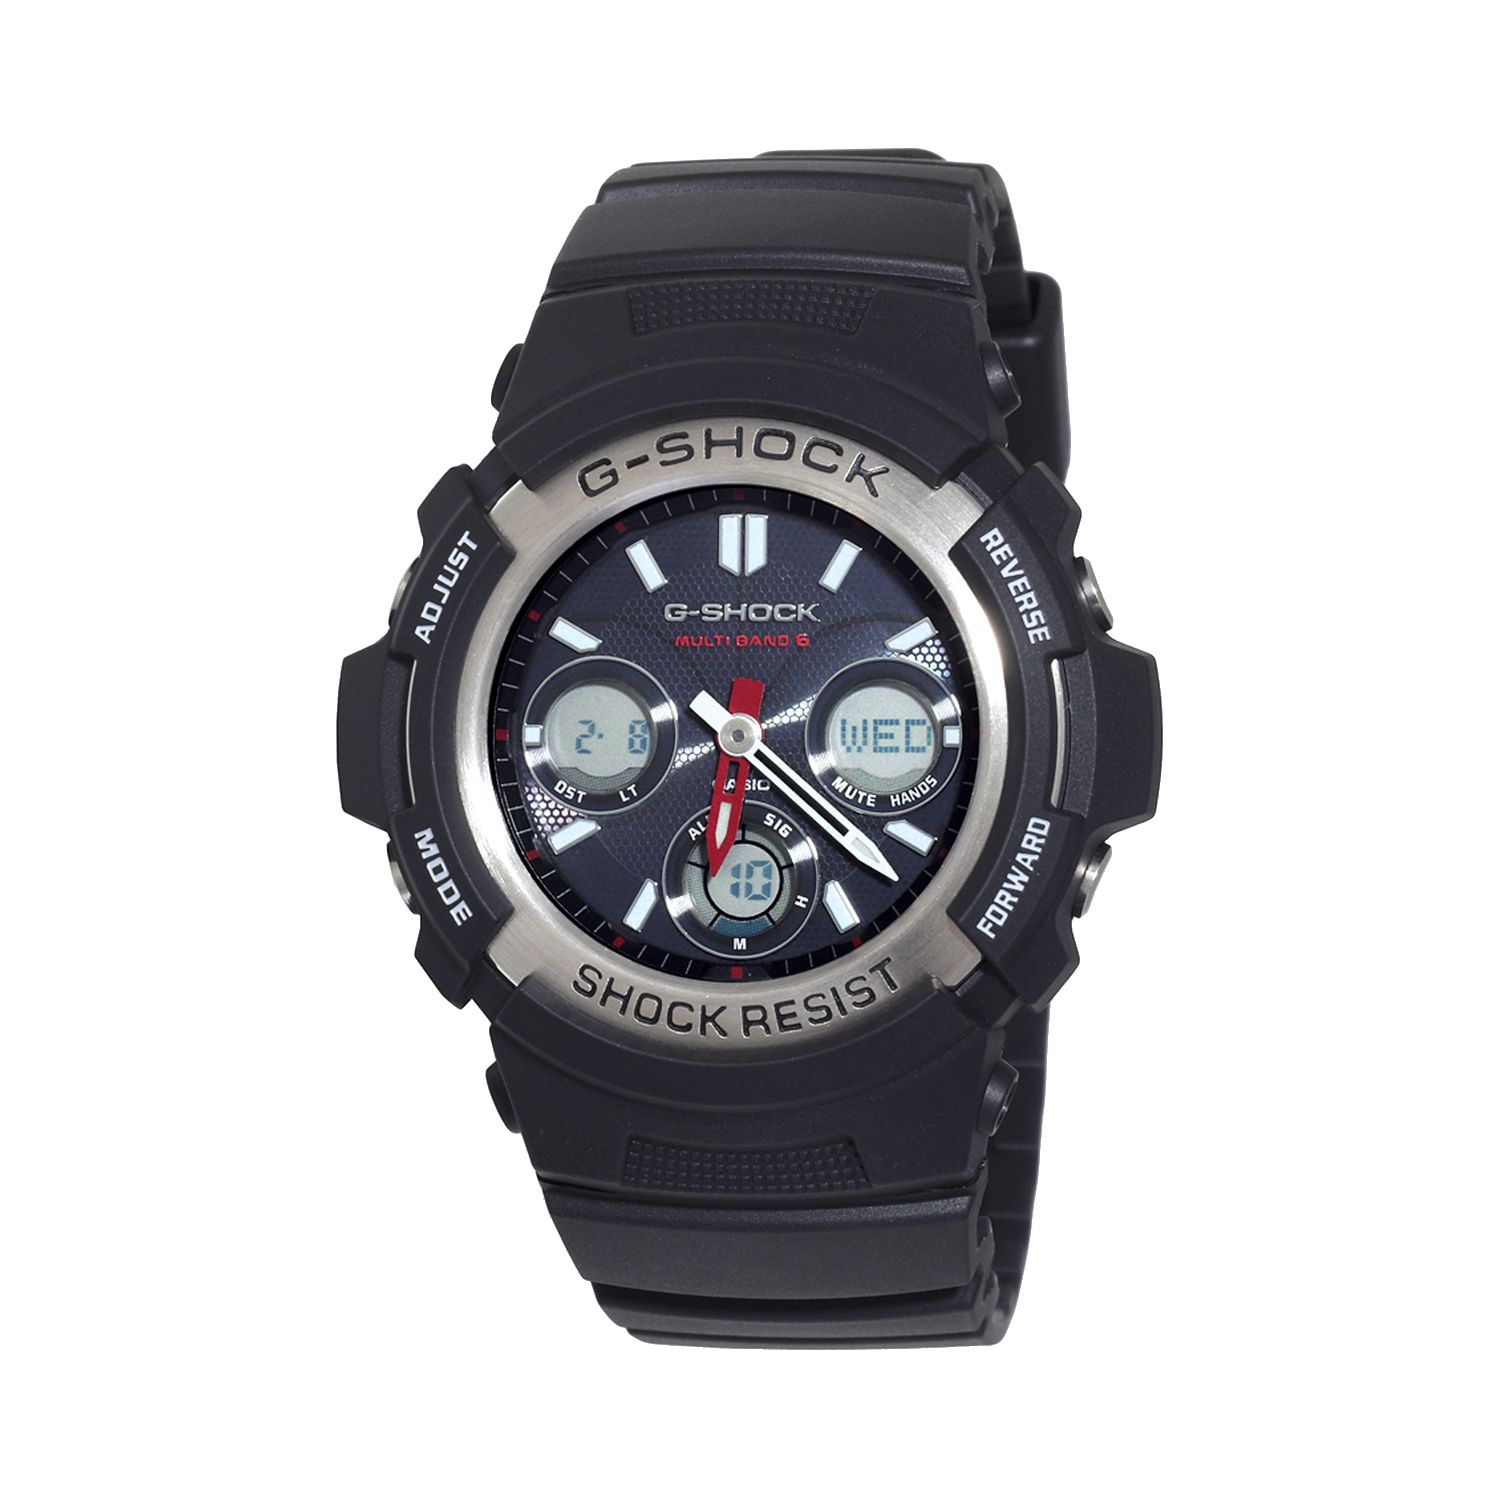 Мужские аналоговые и цифровые часы Casio G-Shock Tough Solar с атомной энергетикой — AWGM100-1ACR Relic by Fossil цена и фото